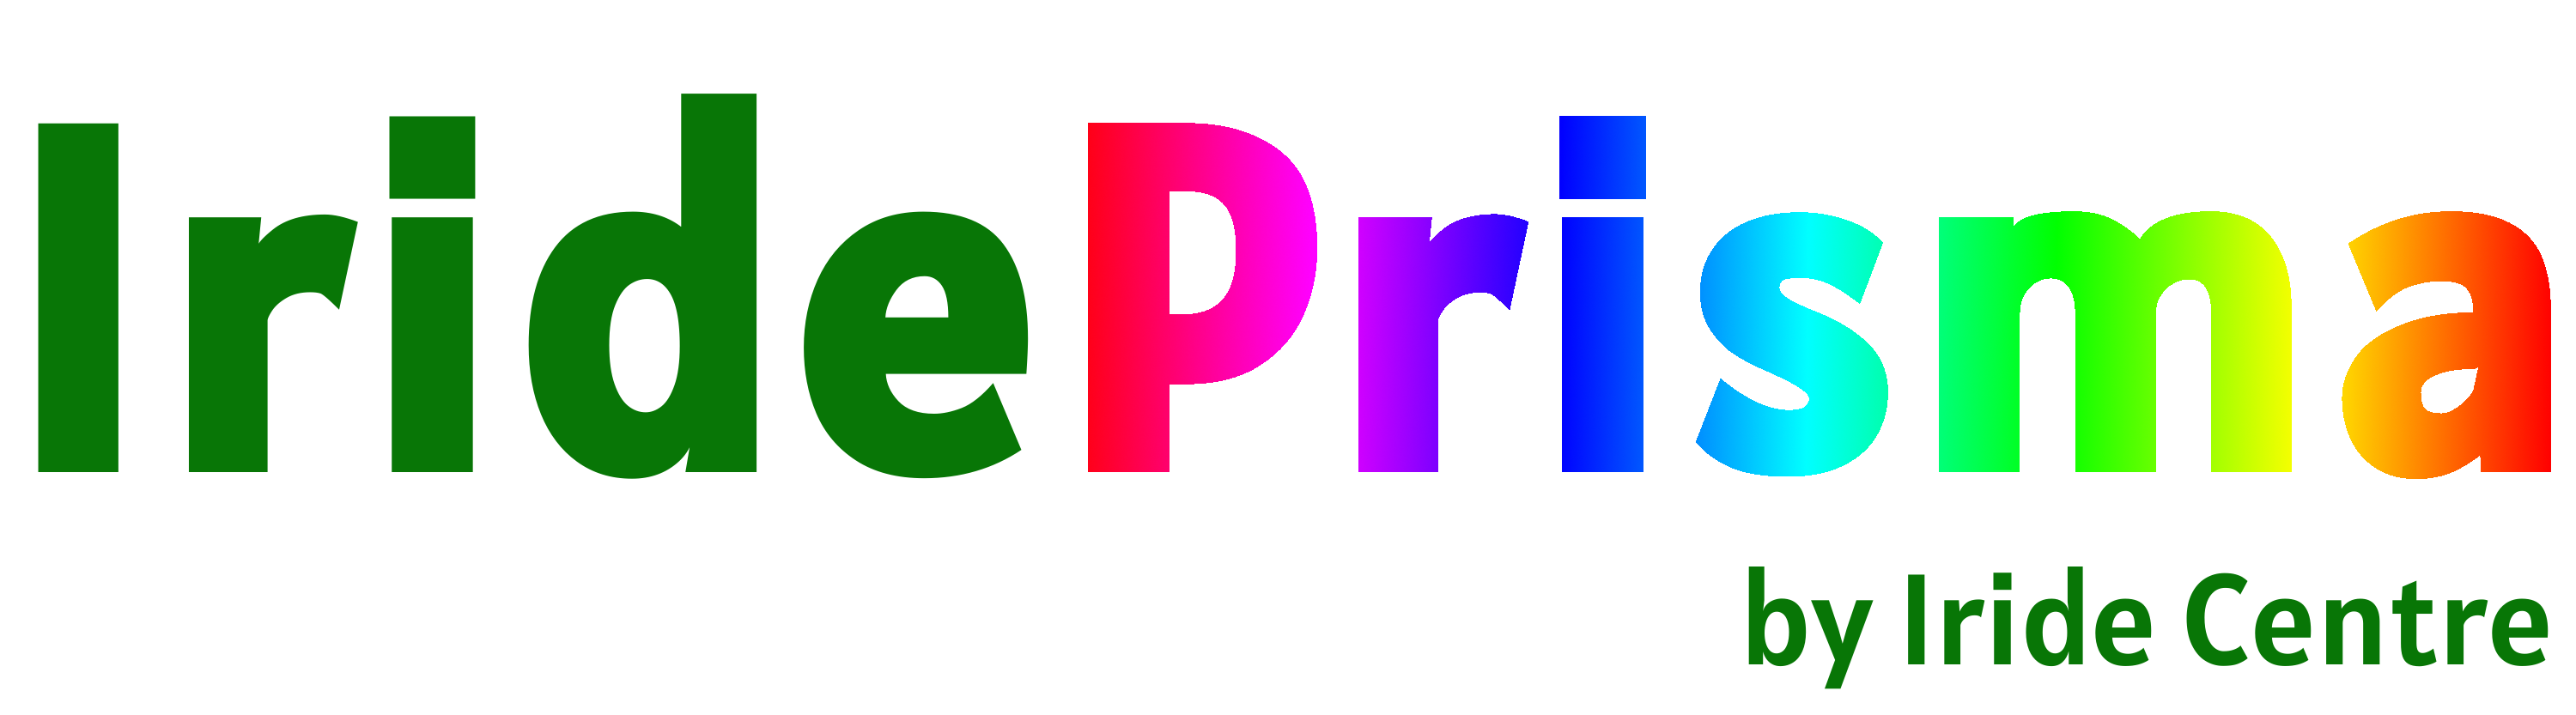 Logo Prisma no background